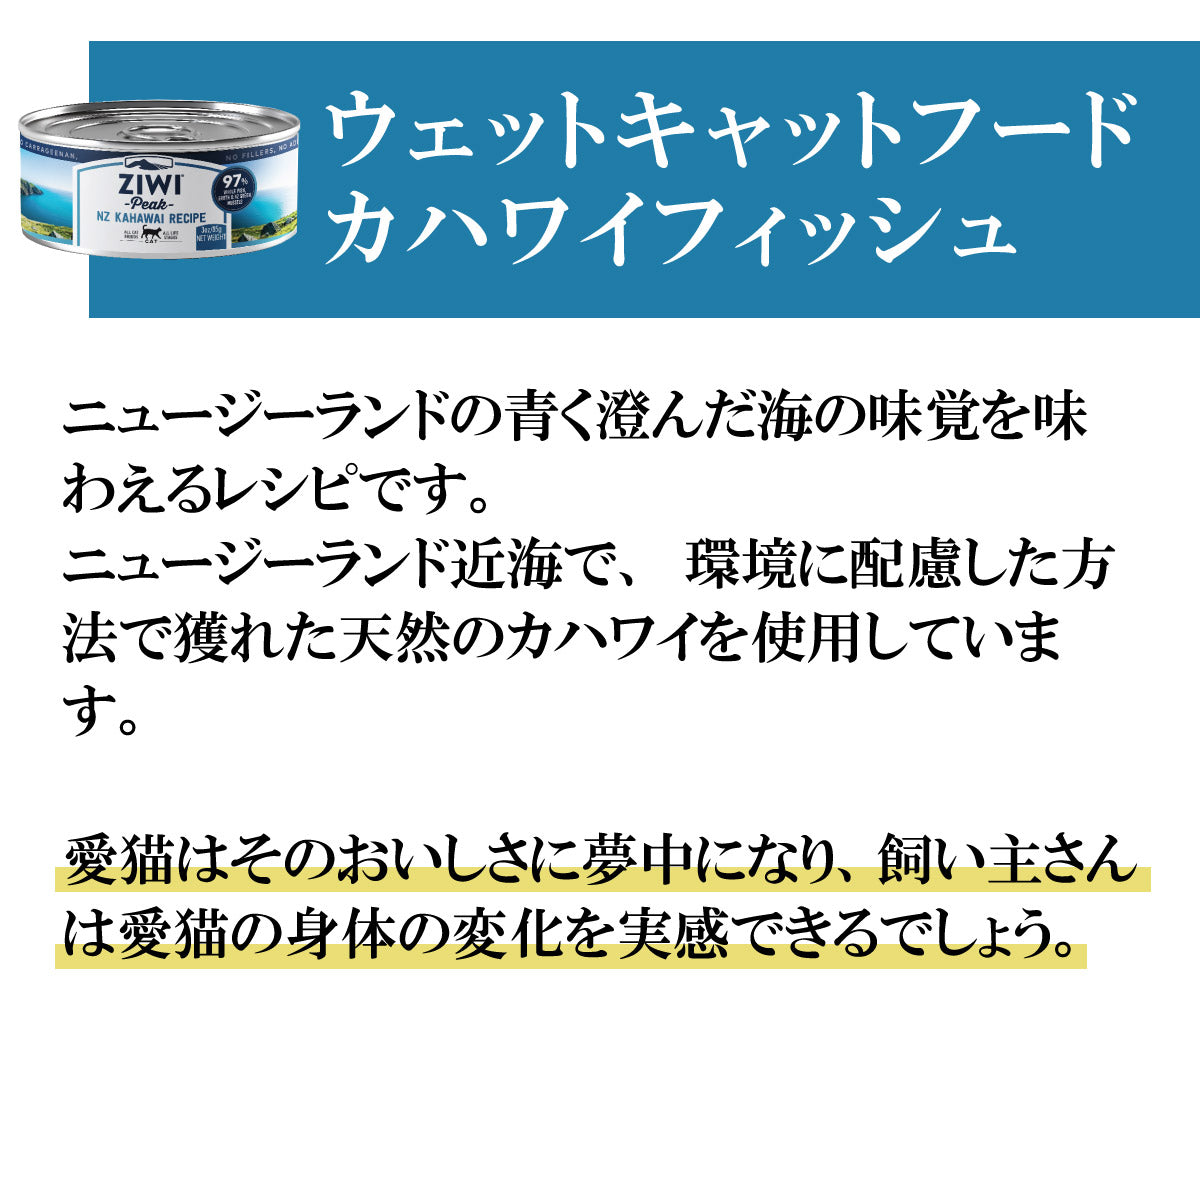 ジウィ ZIWI キャットフード キャット缶 カハワイフィッシュ 85g 正規品 無添加 ジウィピーク